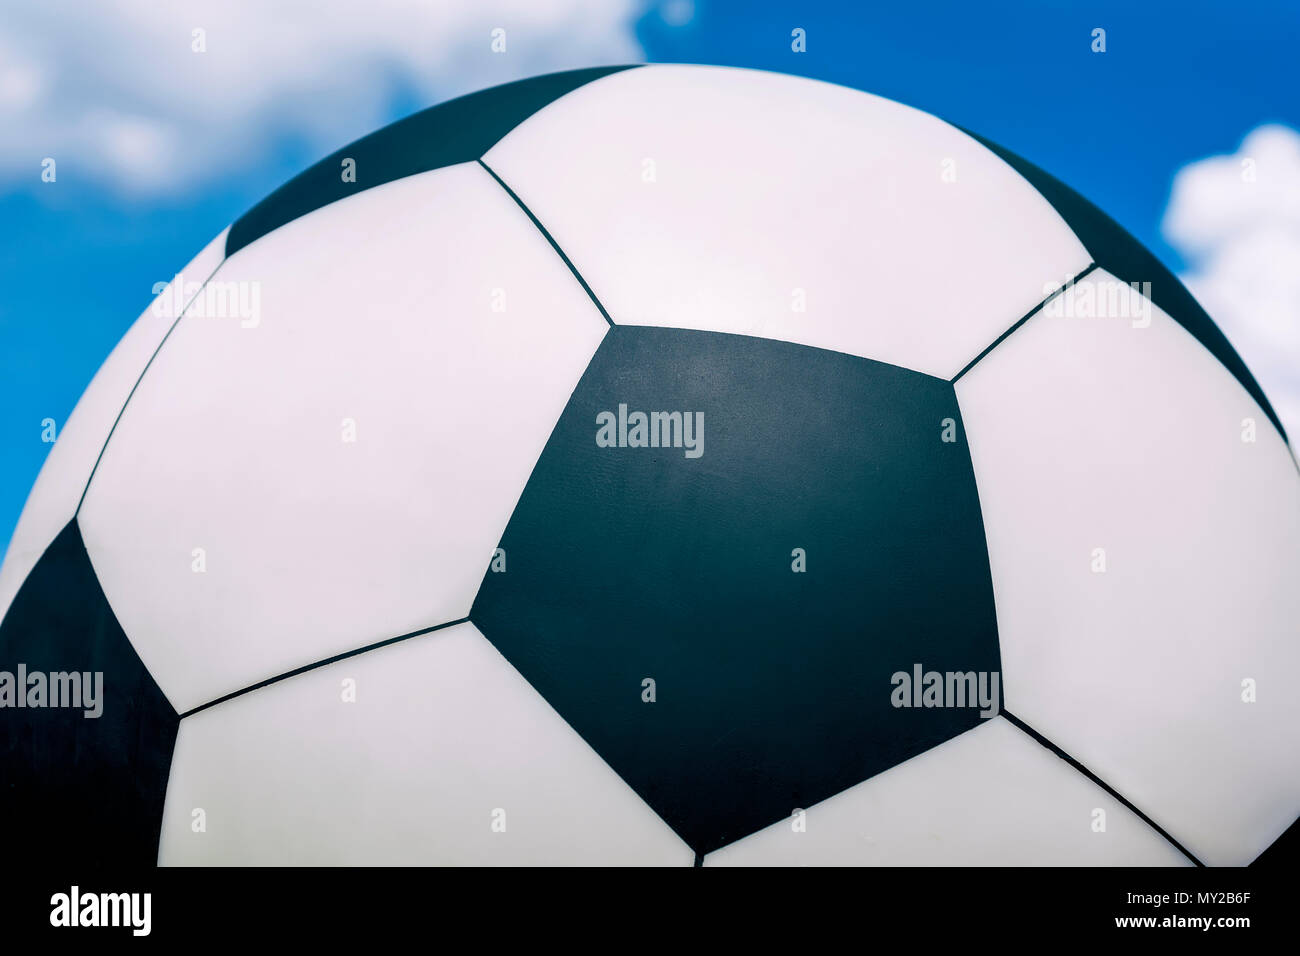 Ballon de soccer contre le ciel bleu avec des nuages blancs, la texture de fond, Banque D'Images